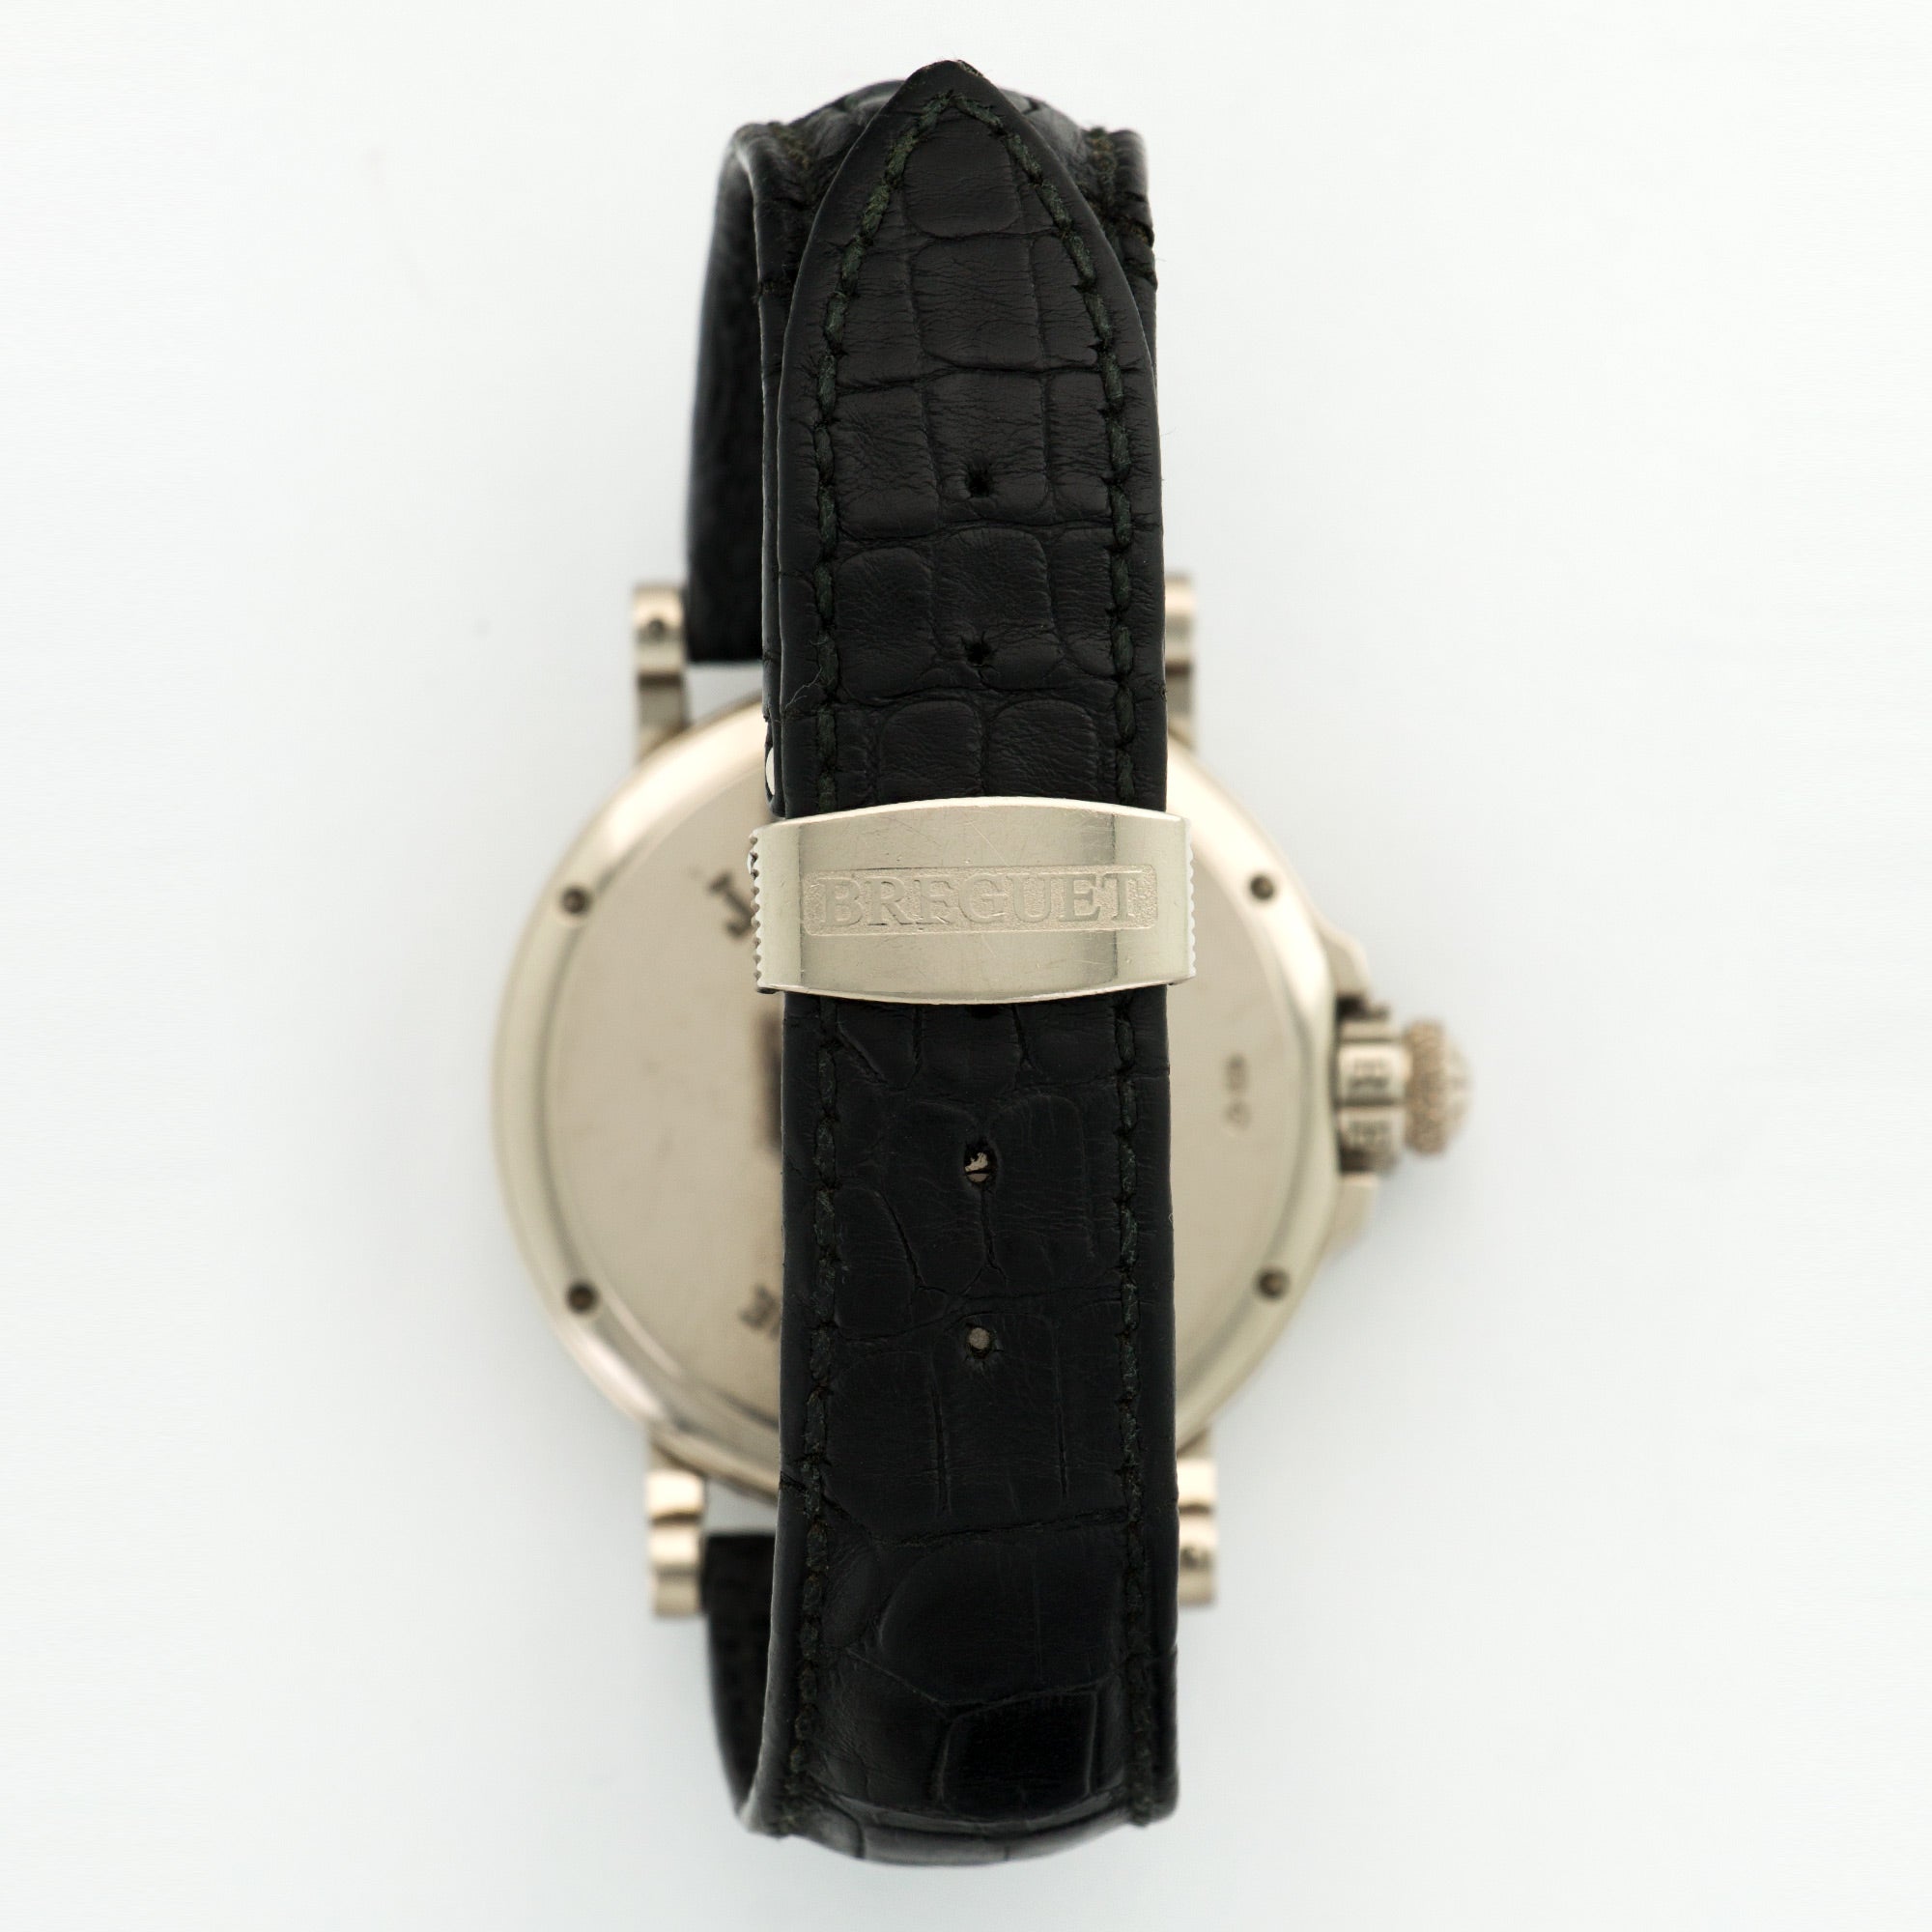 Breguet - Breguet White Gold Hora Mundi Marine Watch Ref. 3700 - The Keystone Watches